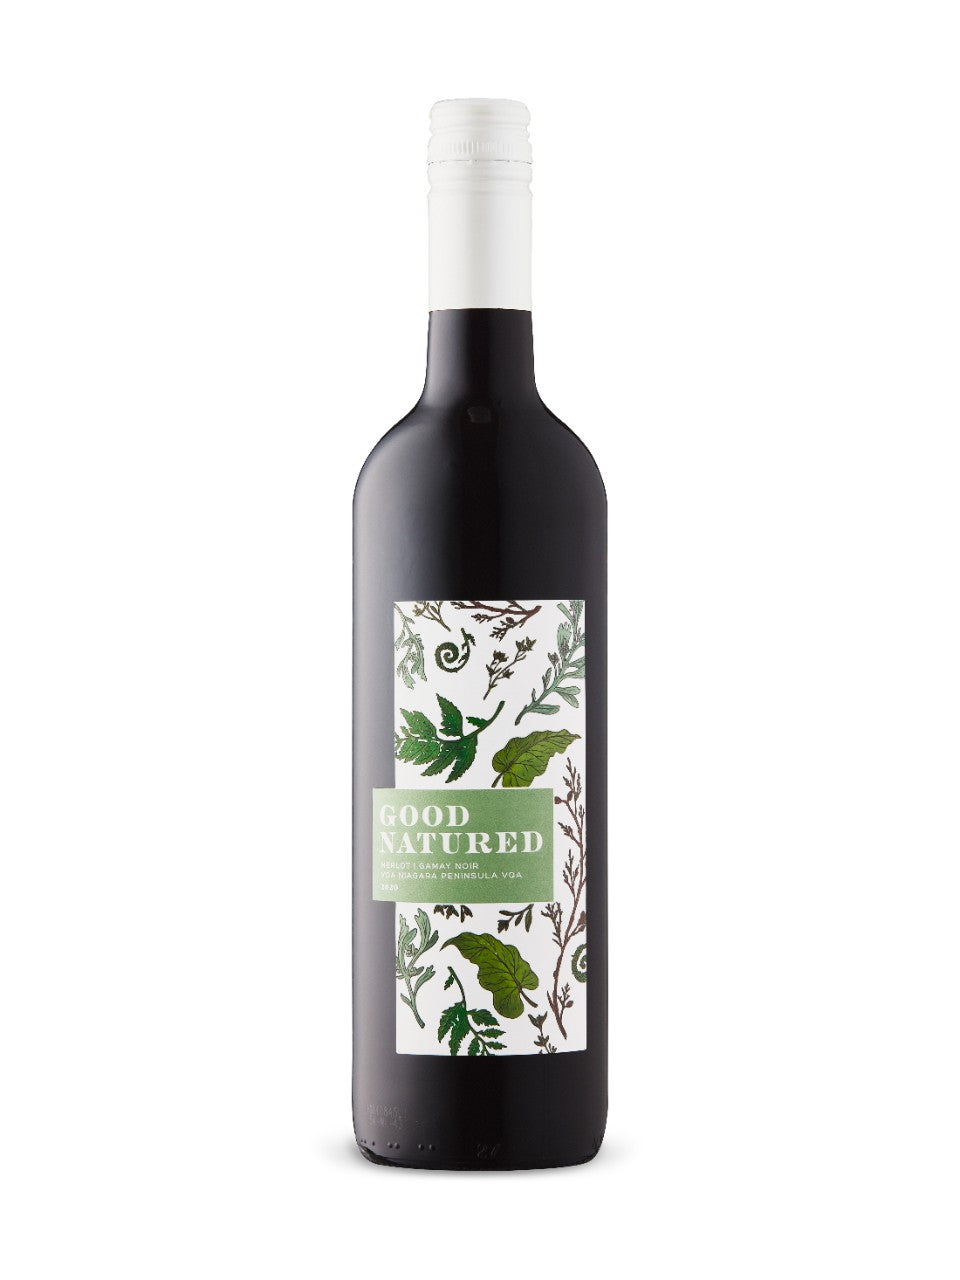 Good Natured Merlot Gamay Noir VQA Named Varietal Blends-Red 750 ml bottle